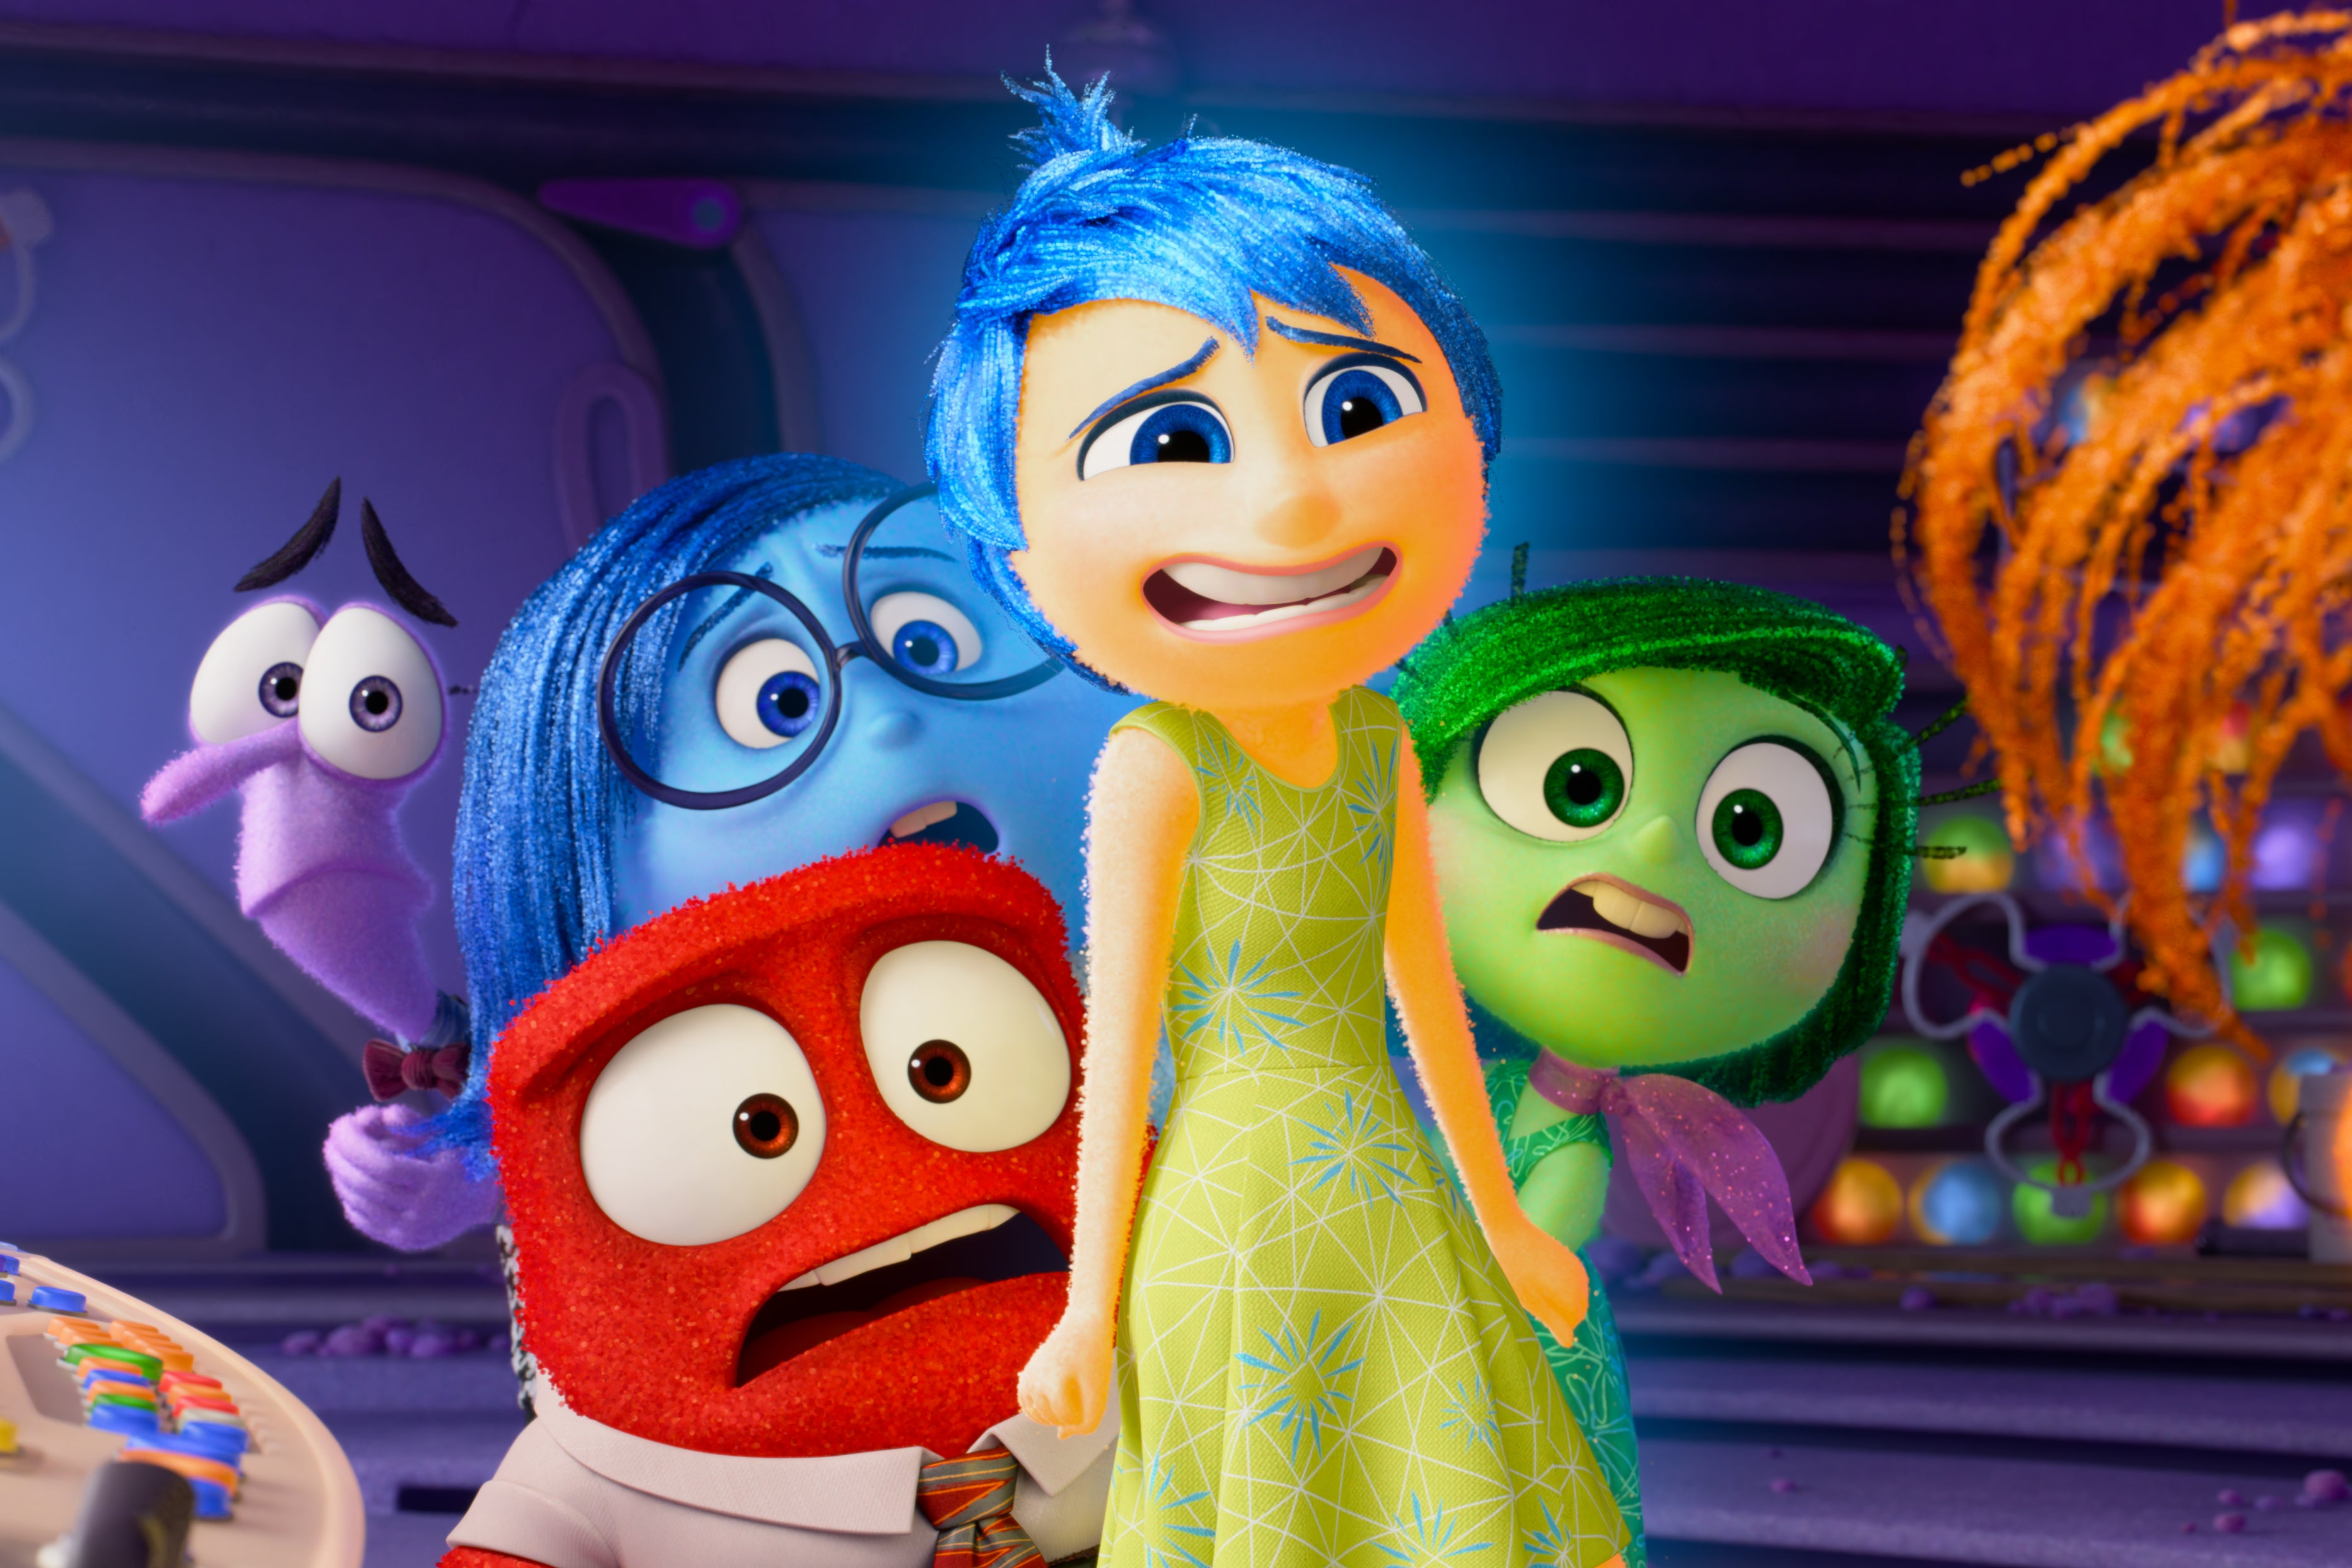 inside out, pixar, bill hader, inside out 2 fans ‘heartbroken’ over one key change from pixar’s original